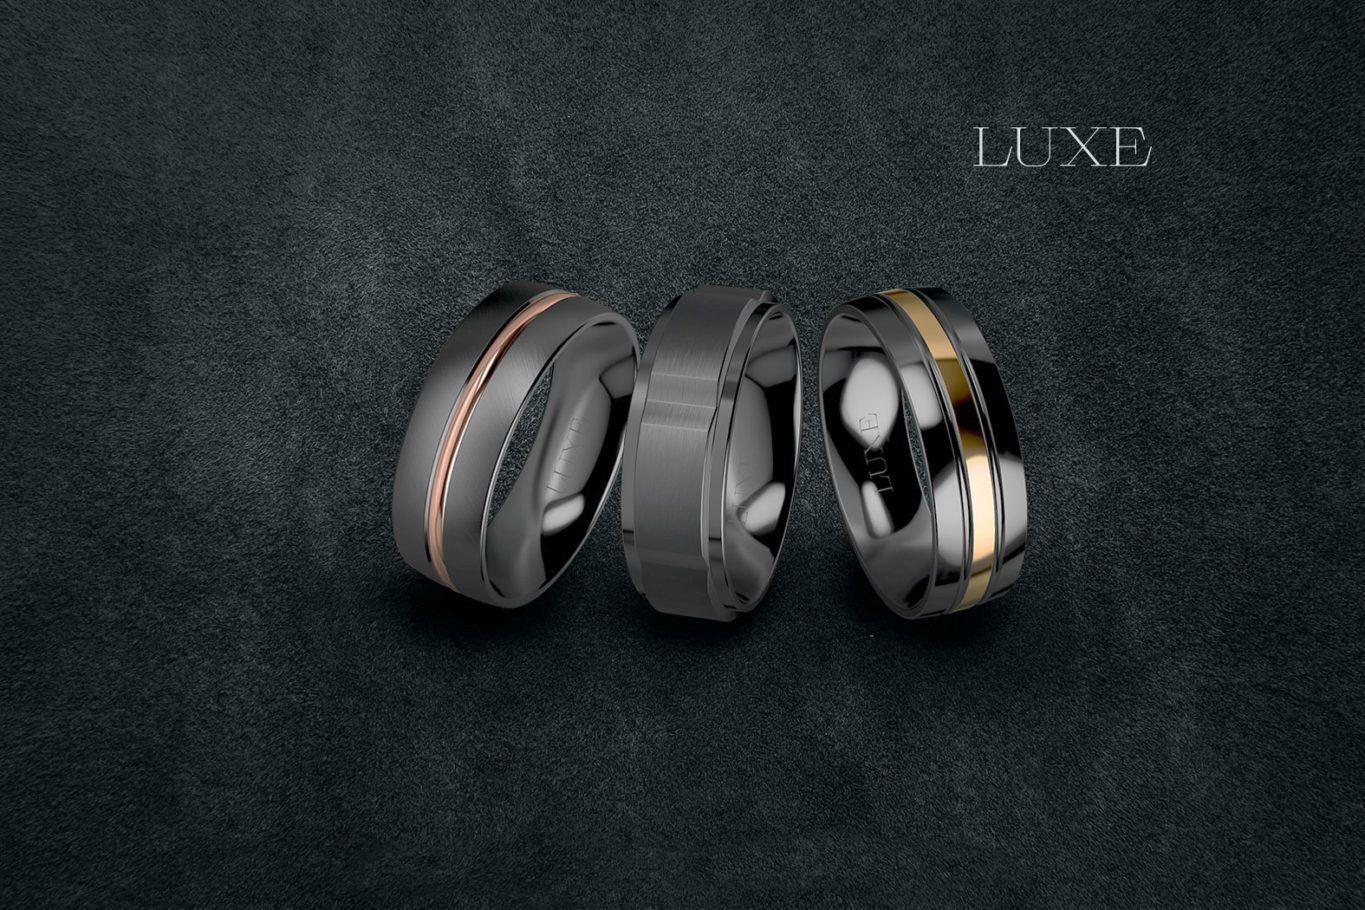 luze zirconium set - Luxe Wedding Rings